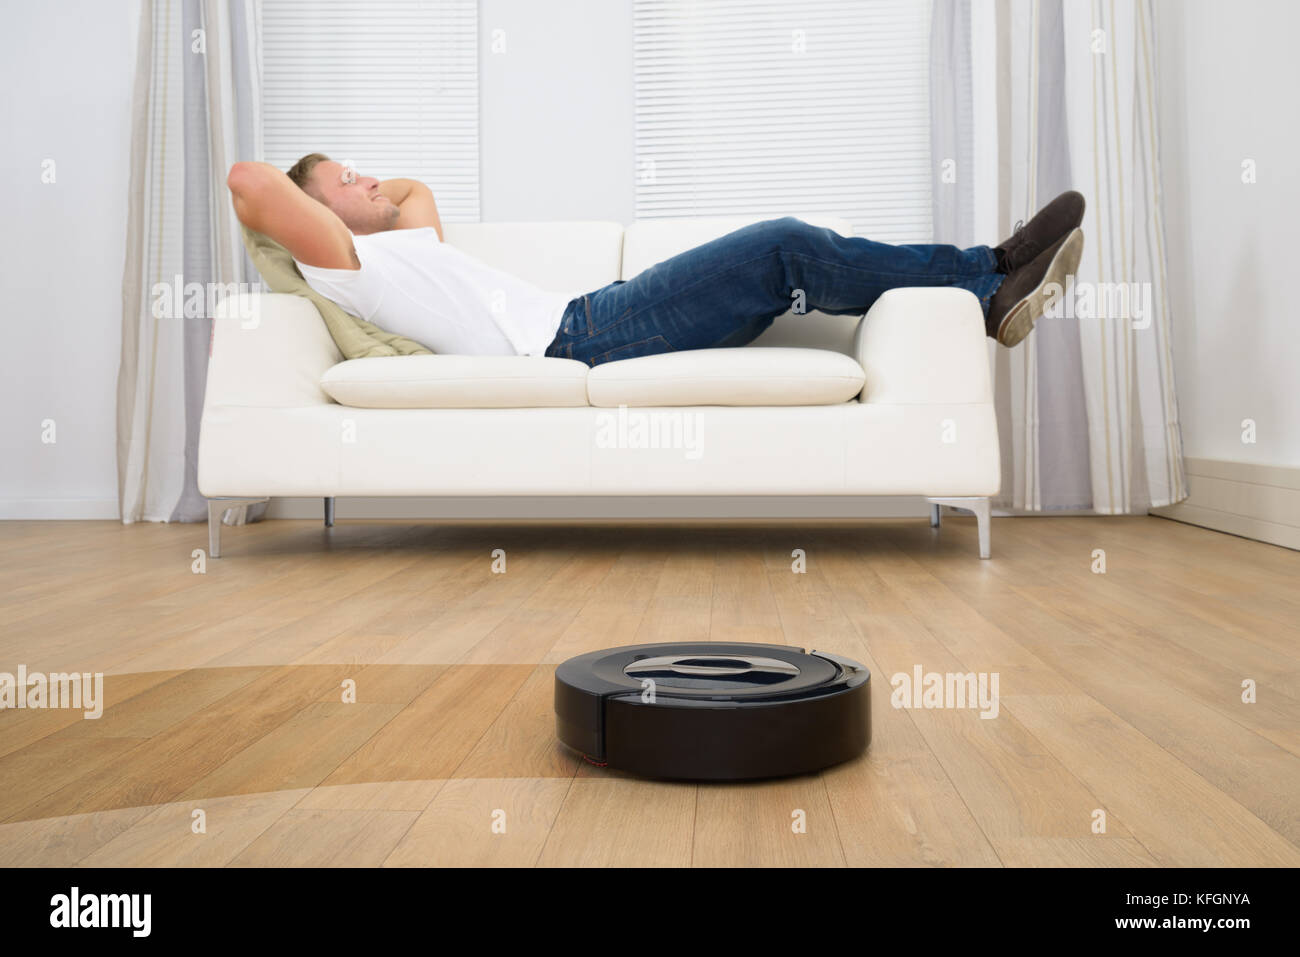 El hombre en el sofá relajante con aspirador robótico sobre piso